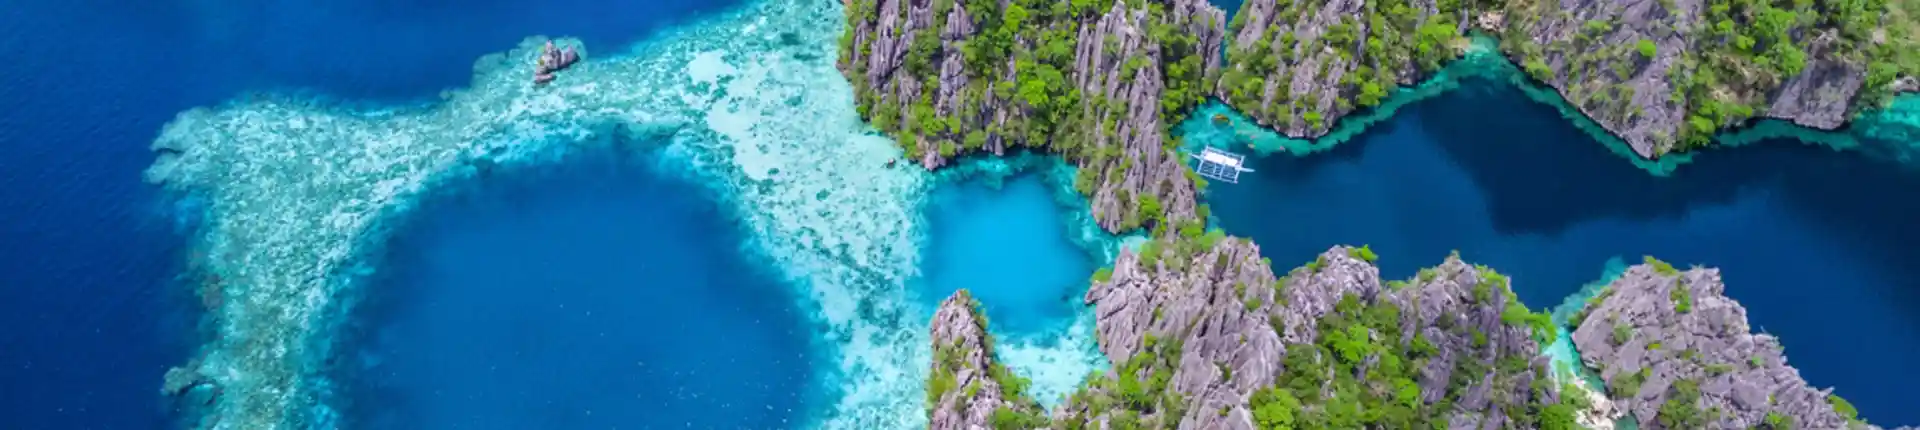 أفضل 20 مكان سياحي في الفلبين نوصيك بزياته